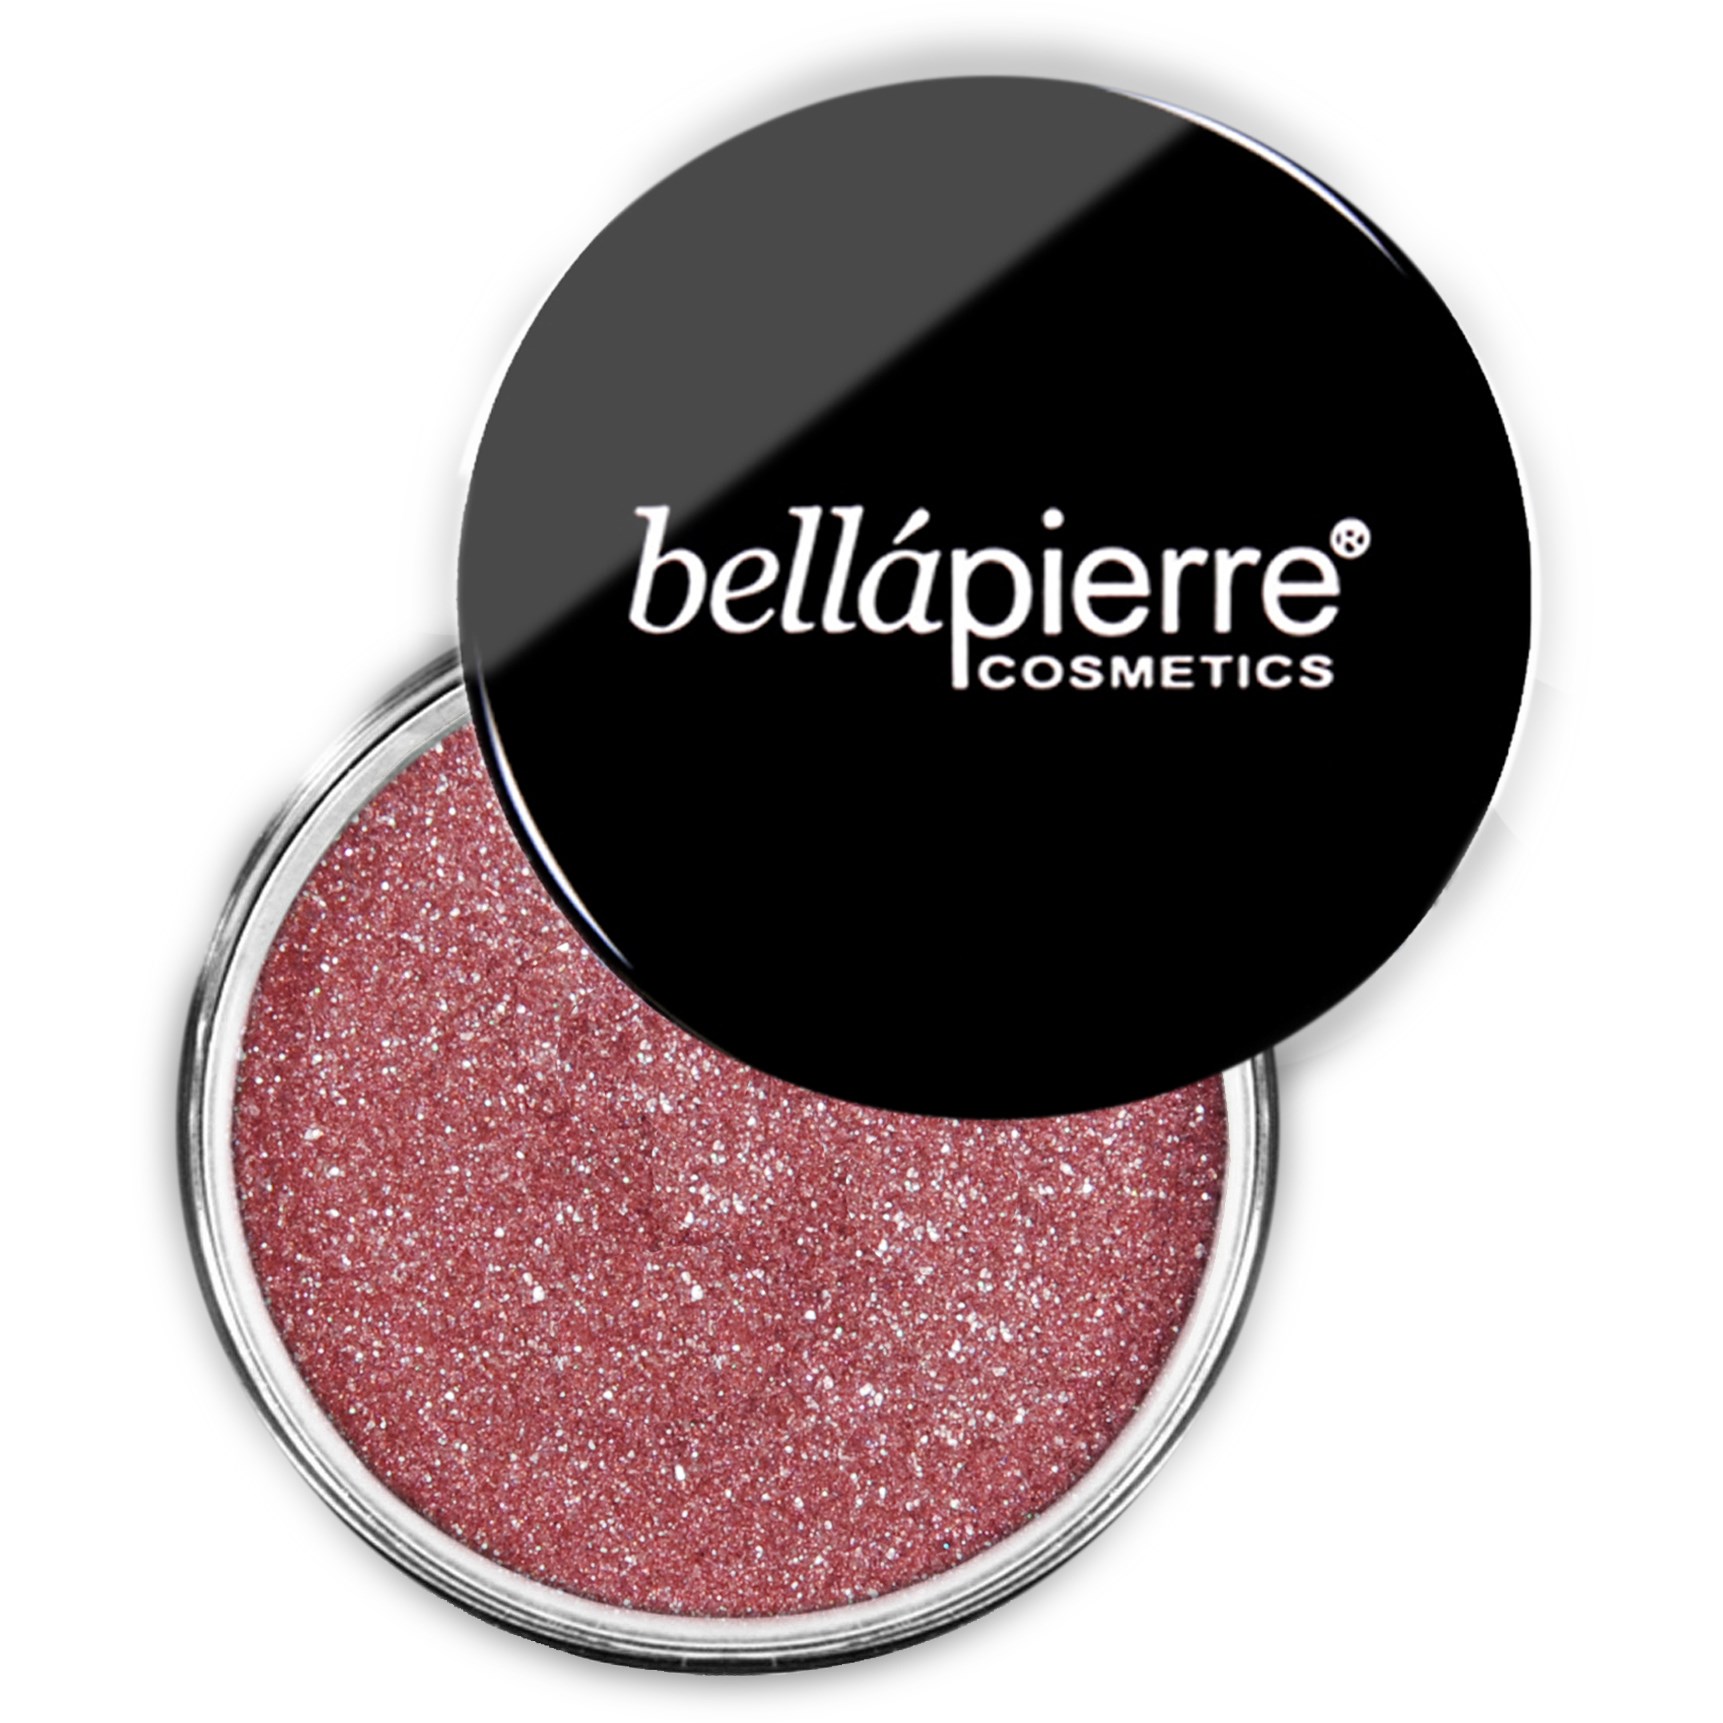 Bellapierre Shimmer Powder - 006 Wild Lilac 2.35g